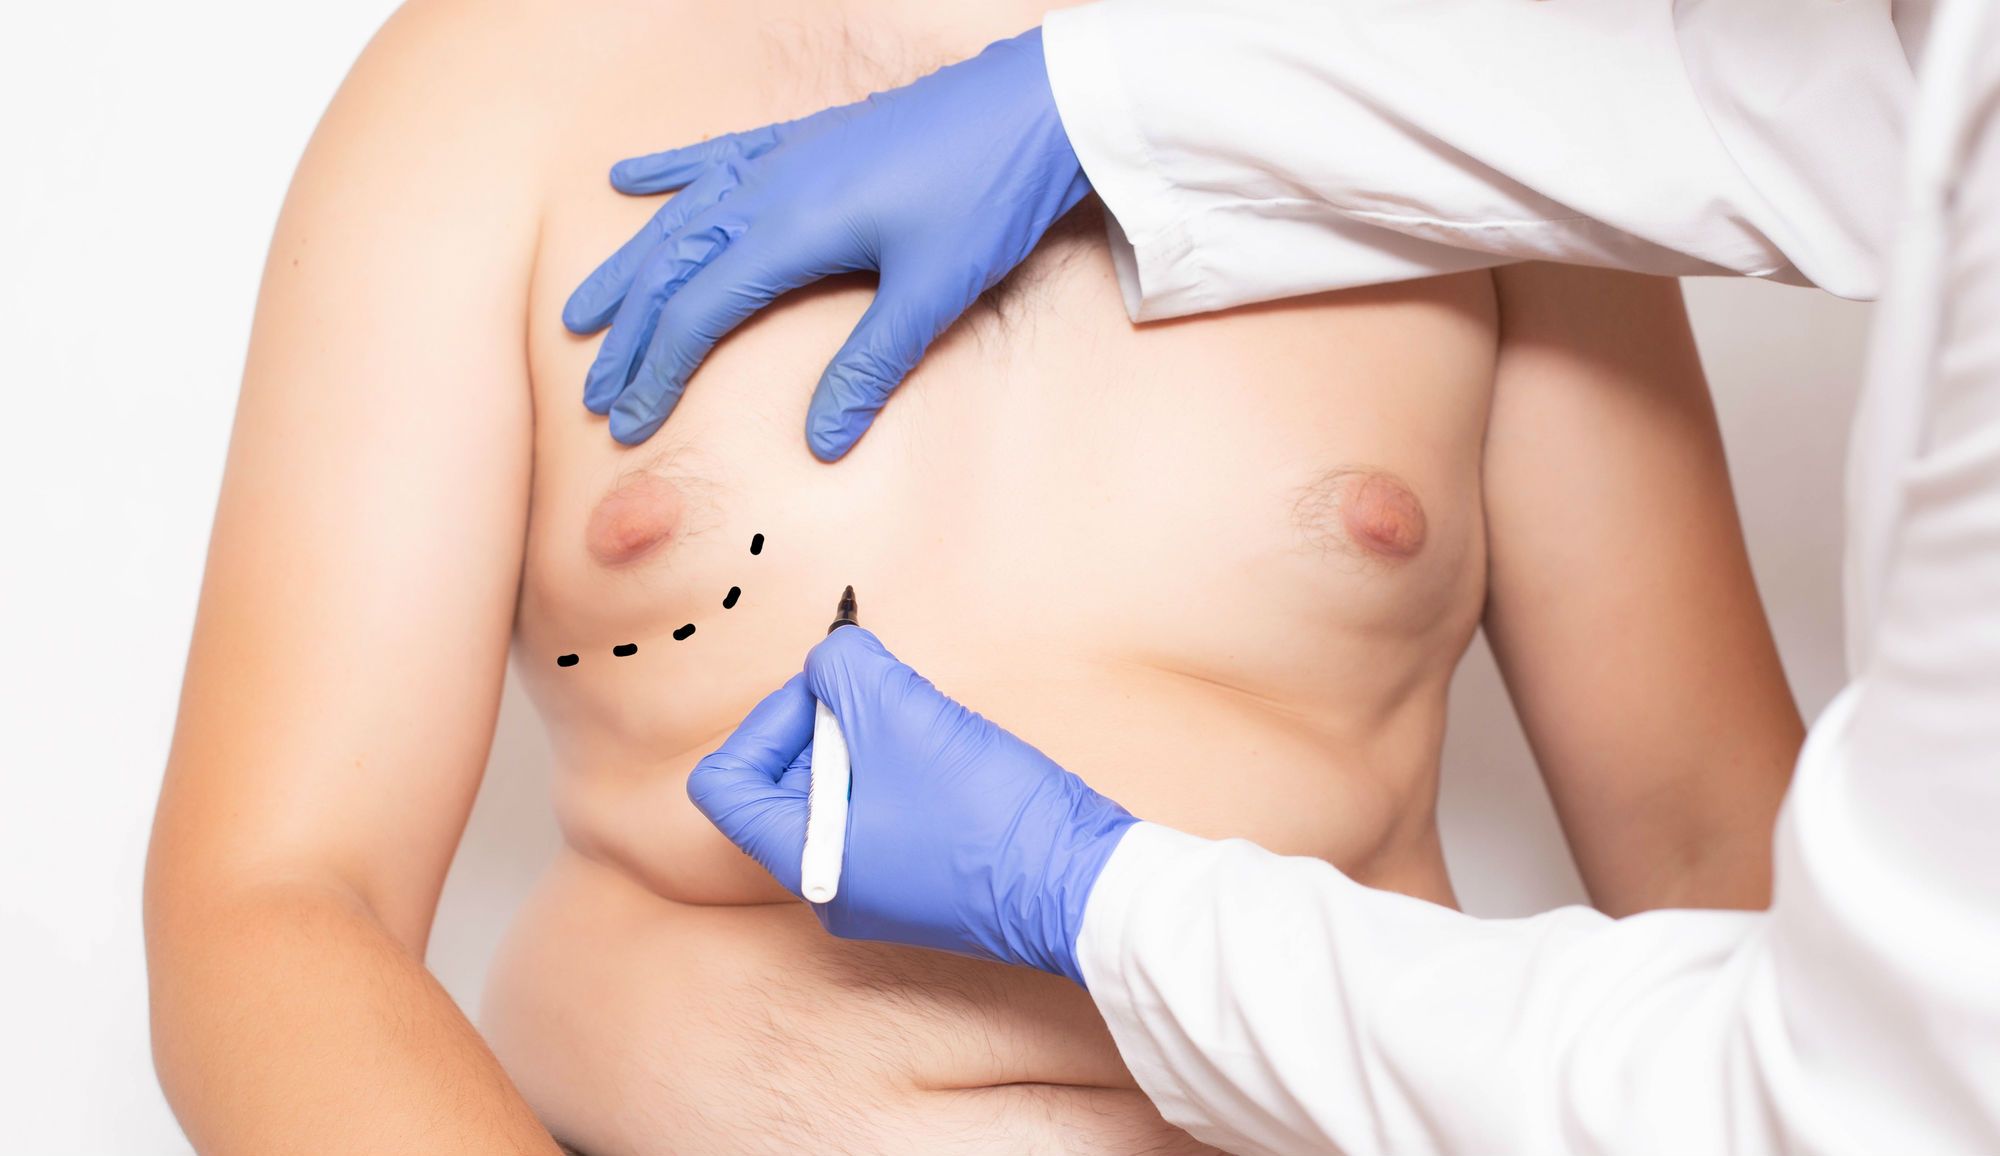 Corrective surgery may be necessary to correct gynecomastia with Risperdal use.